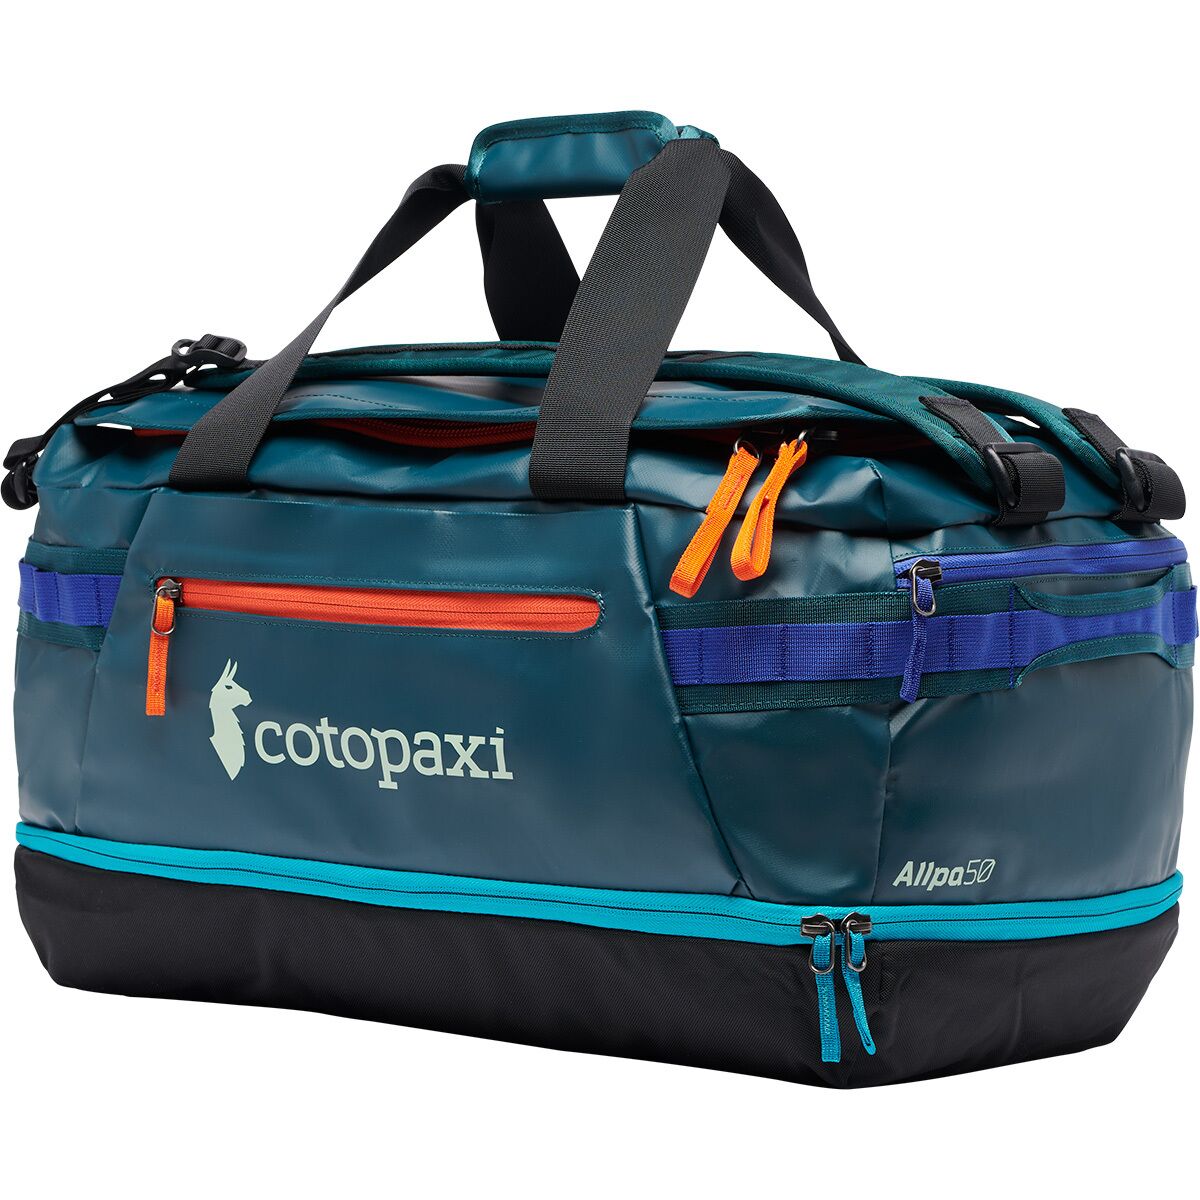 Cotopaxi Allpa 50L Duffel Bag - Accessories